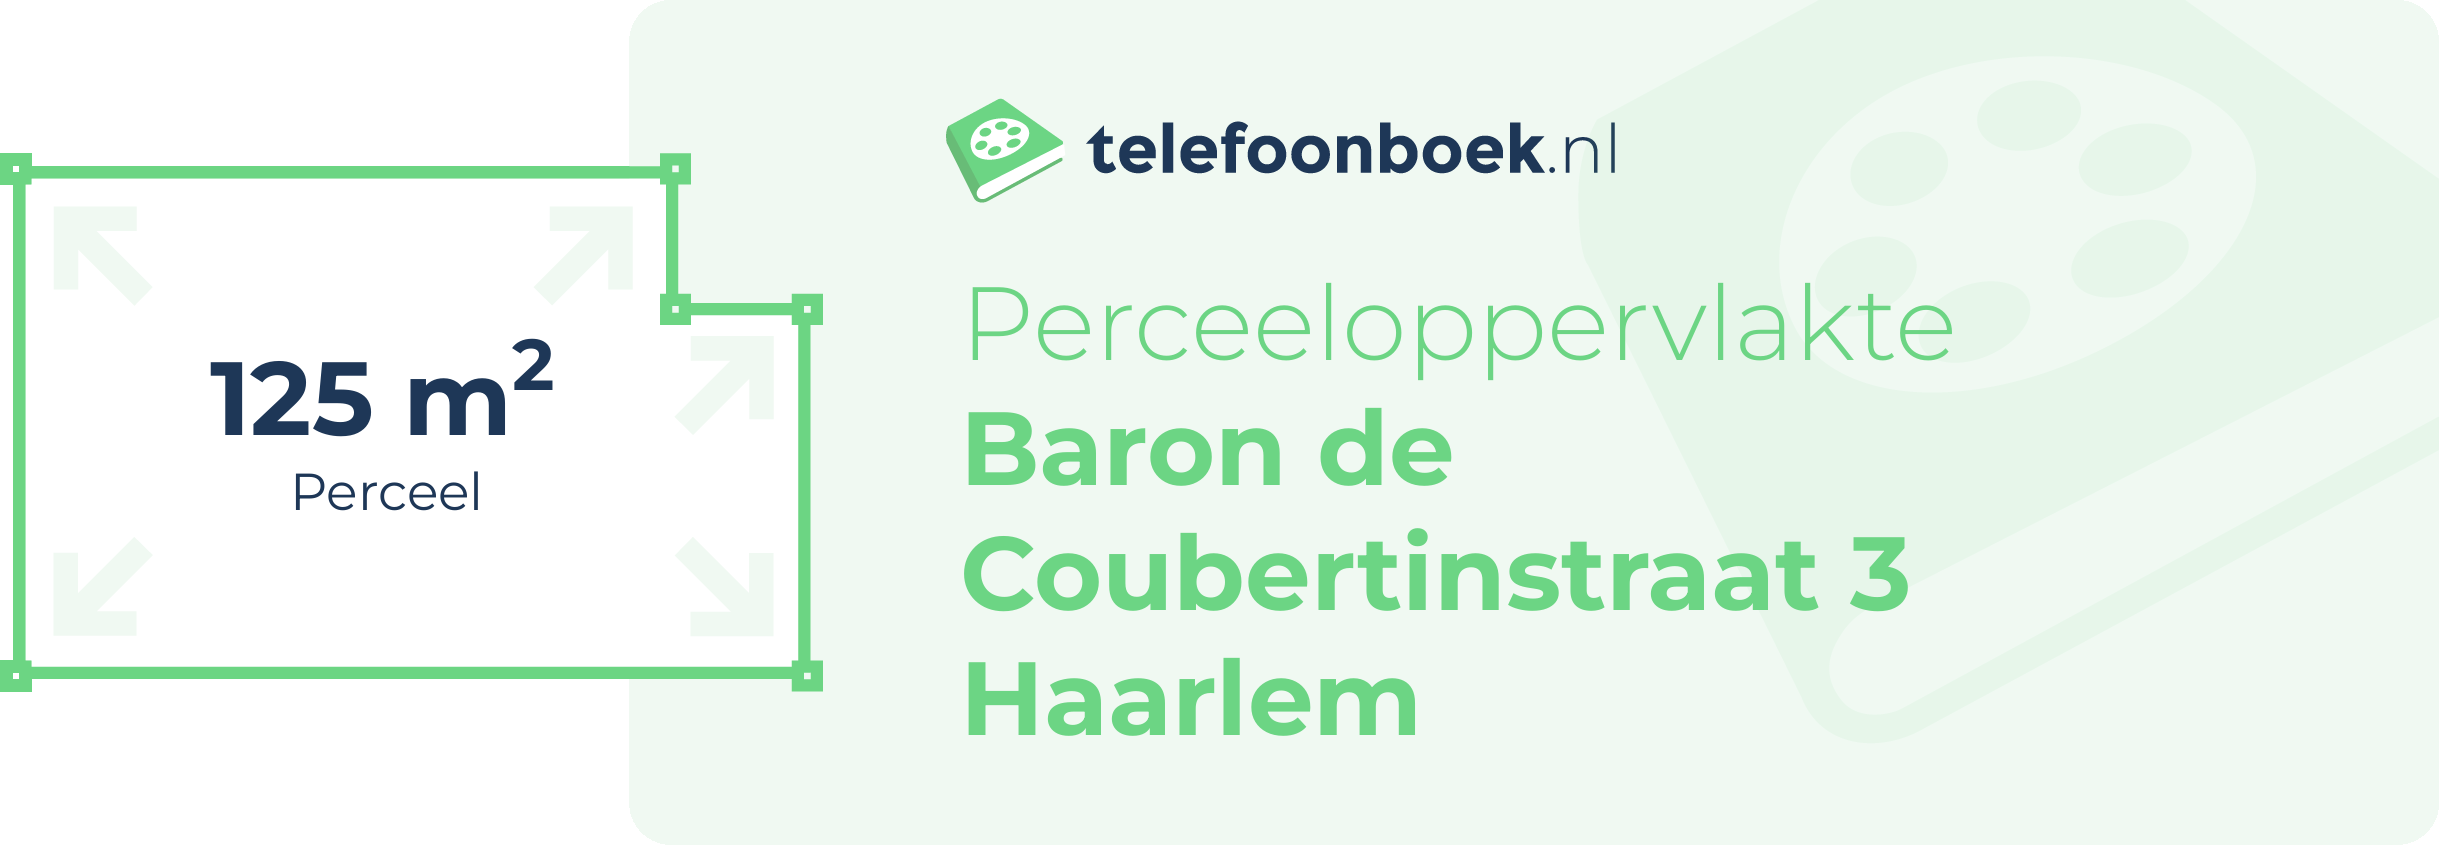 Perceeloppervlakte Baron De Coubertinstraat 3 Haarlem